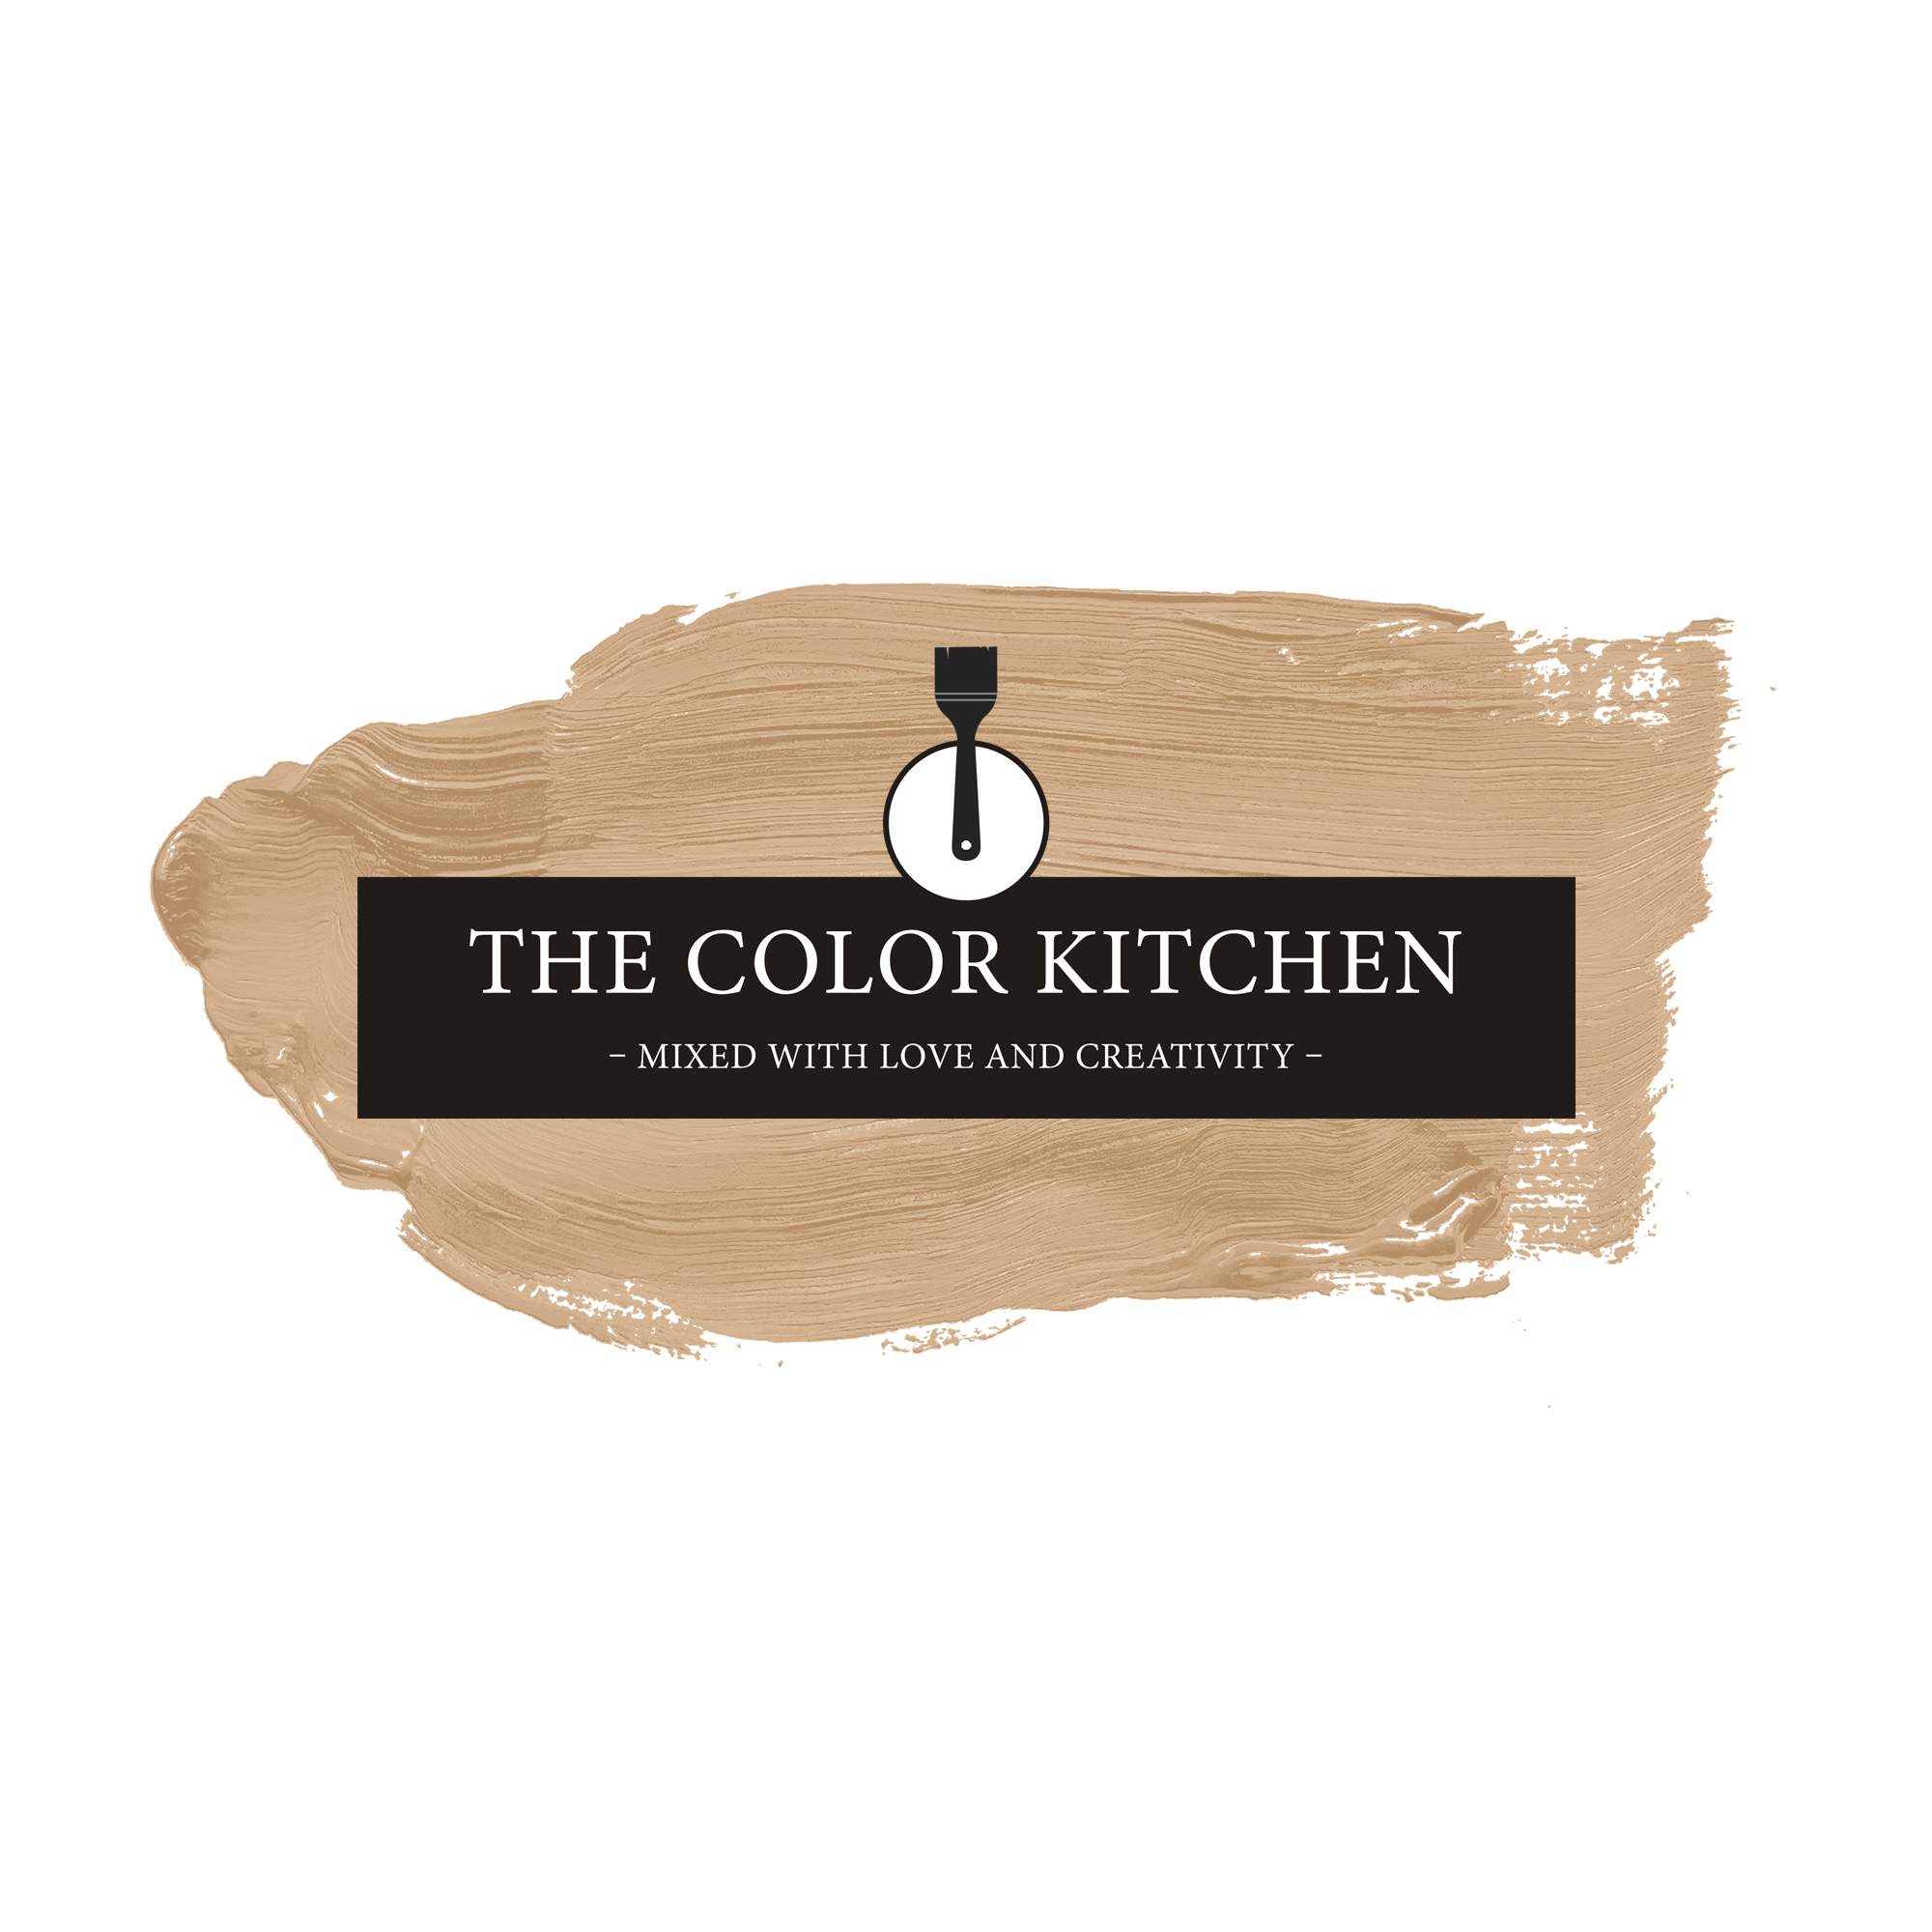 The Color Kitchen Active Almond 5 l